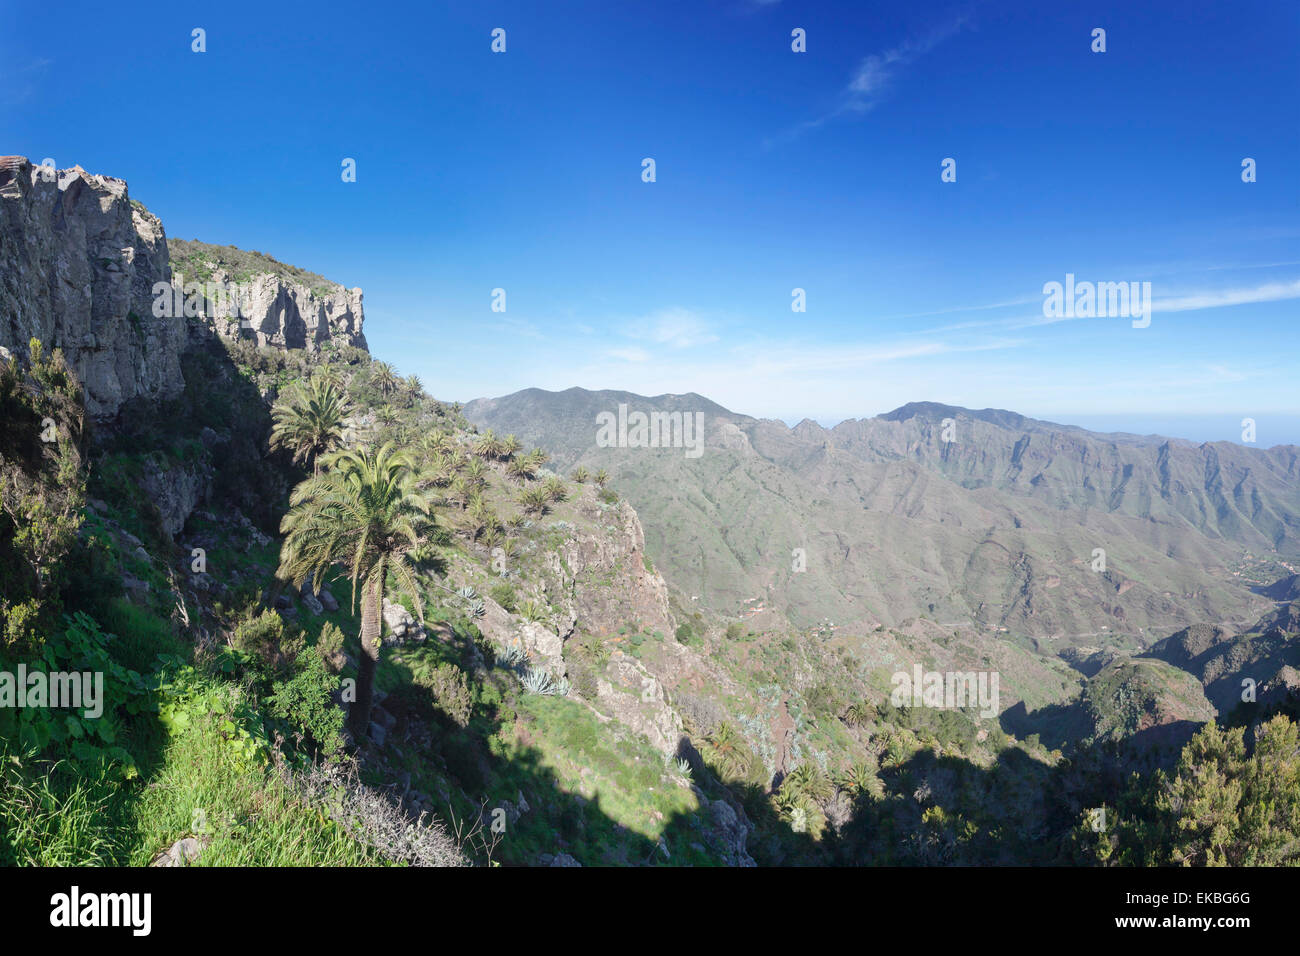 Degollada de Pereza y San Sebastian viewing point, Garajonay Parque National, La Gomera, Canary Islands, Spain Stock Photo